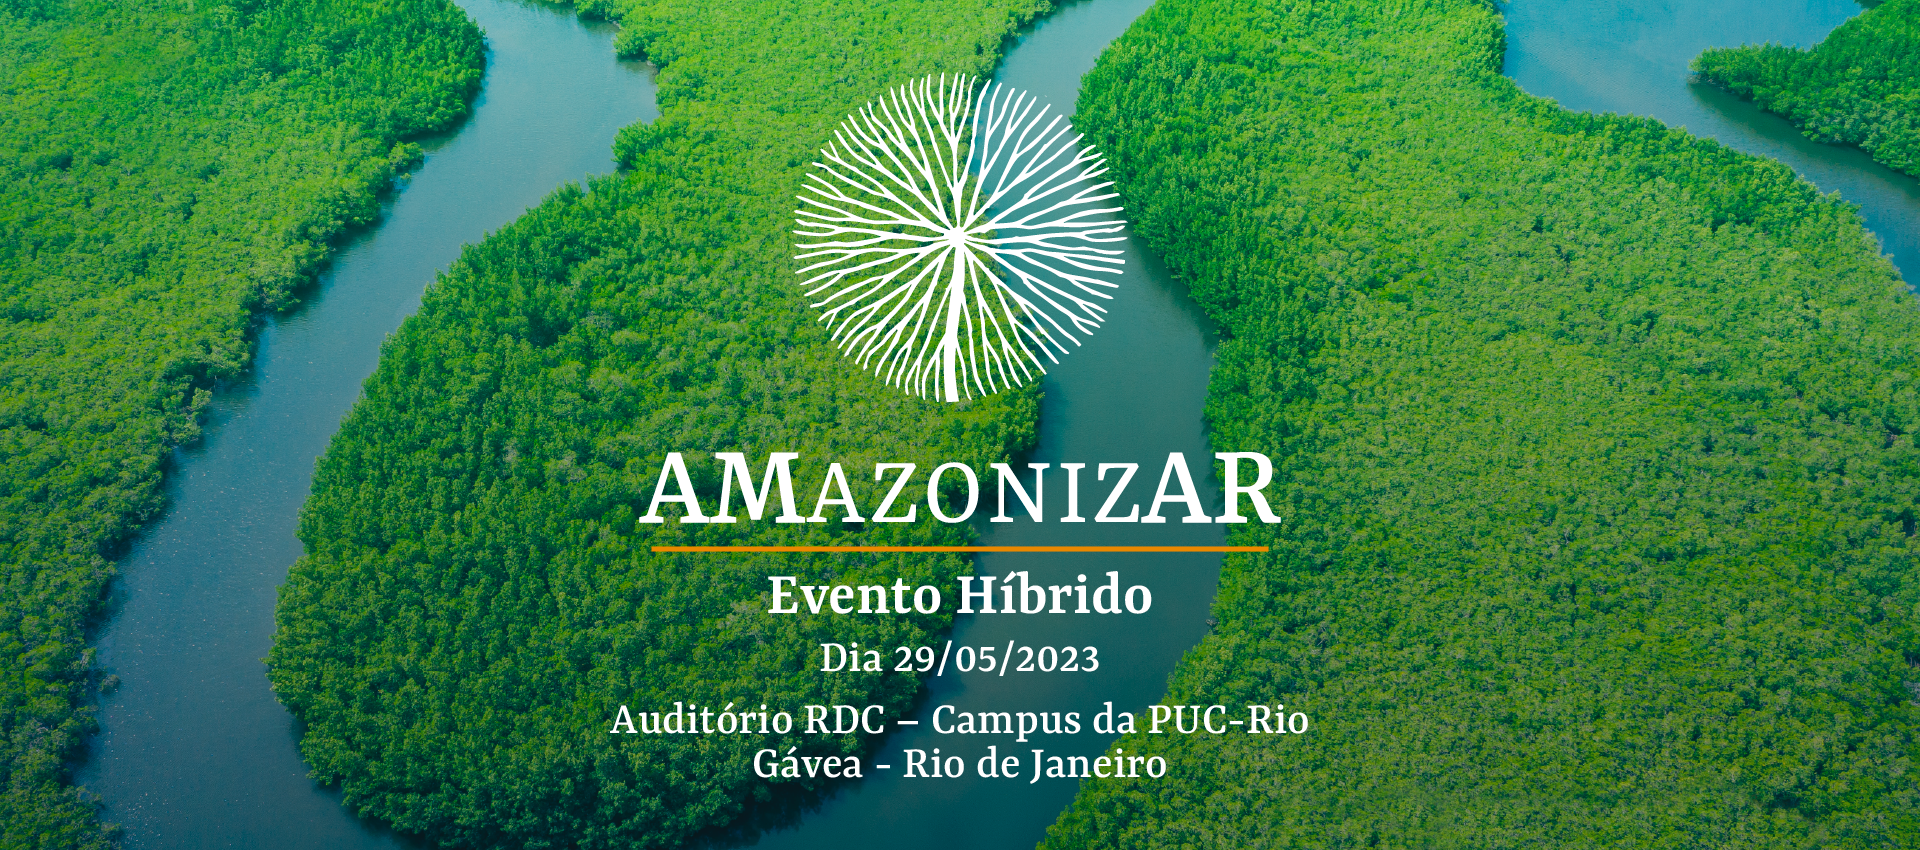 AMAZONIZAR - Evento híbrido, dia 29/05/2023